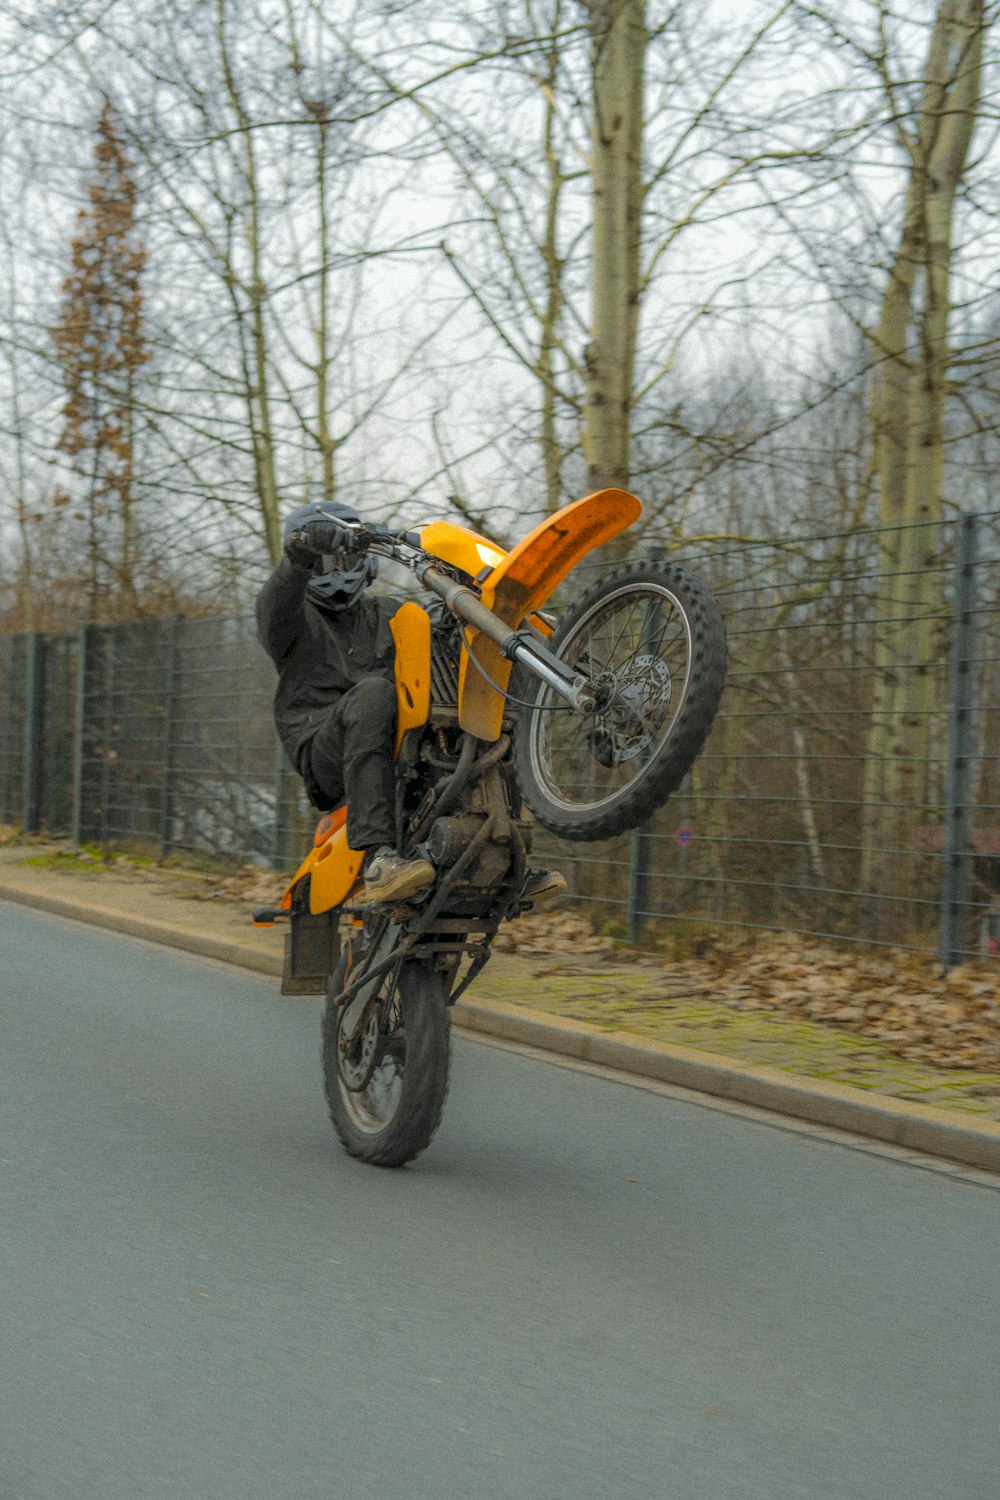 Una persona su una moto che fa un trucco in aria